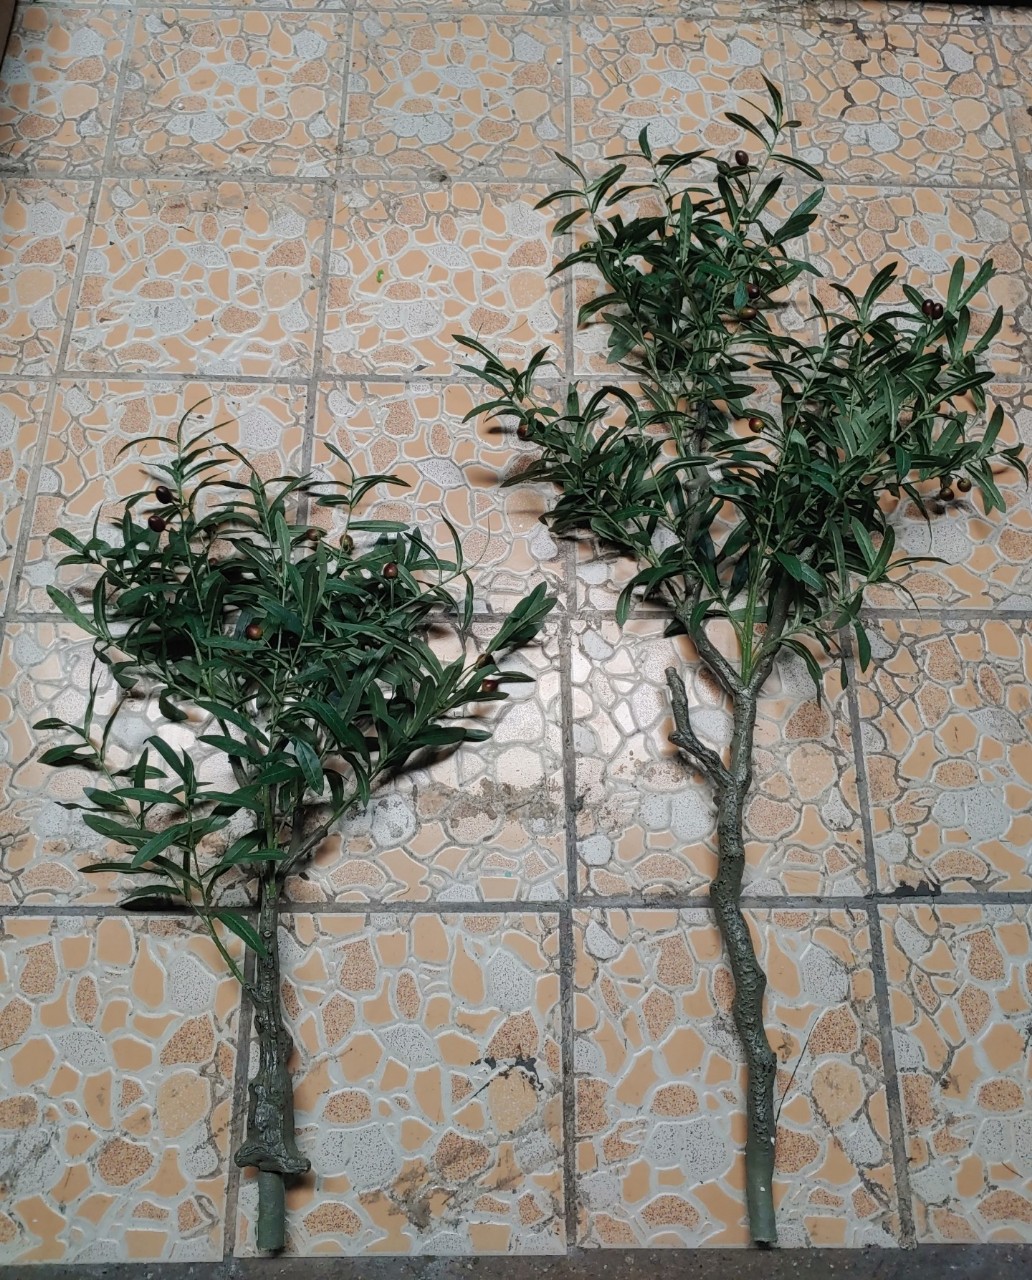 Cây Oliu giả, cây Olive decor trang trí nhà cửa, cao 80cm, 120cm (chưa bao gồm chậu)